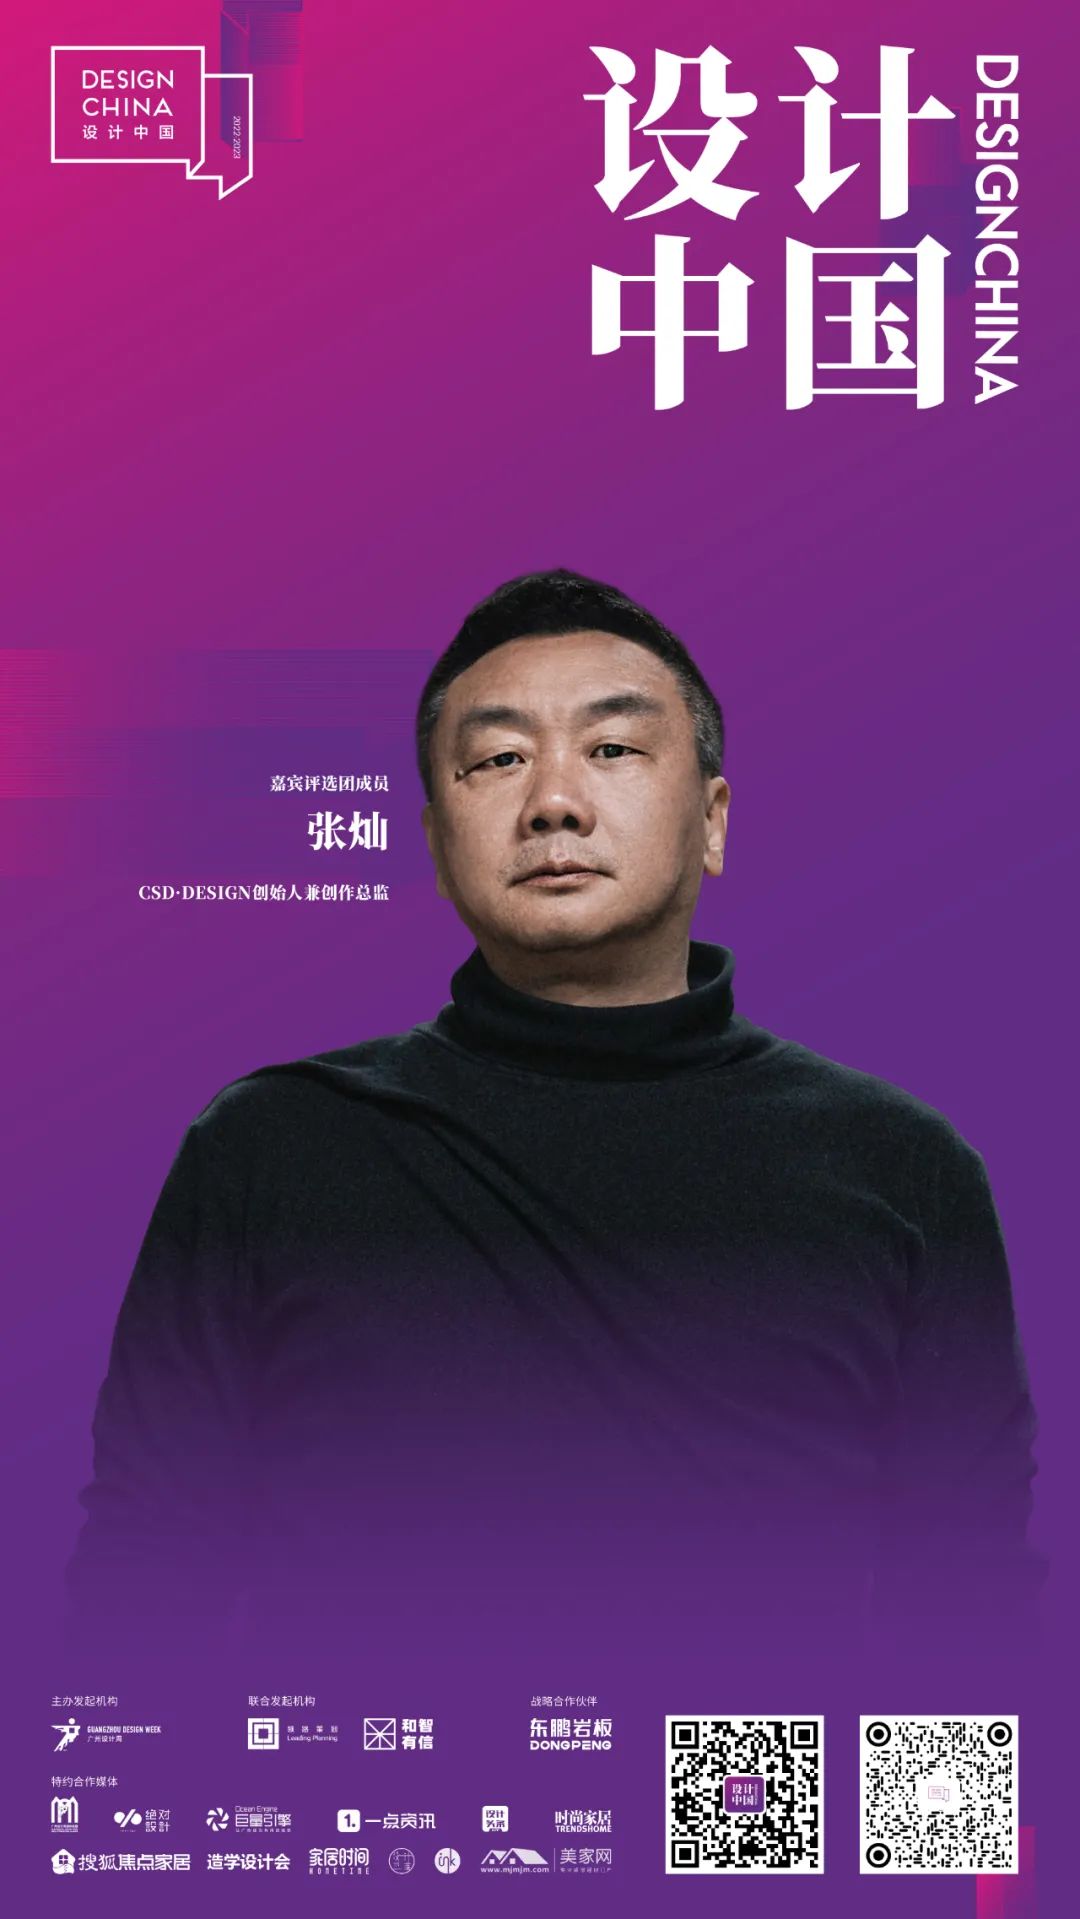 2022东鹏岩板X设计中国 · 年度先锋榜嘉宾评选团阵容揭晓